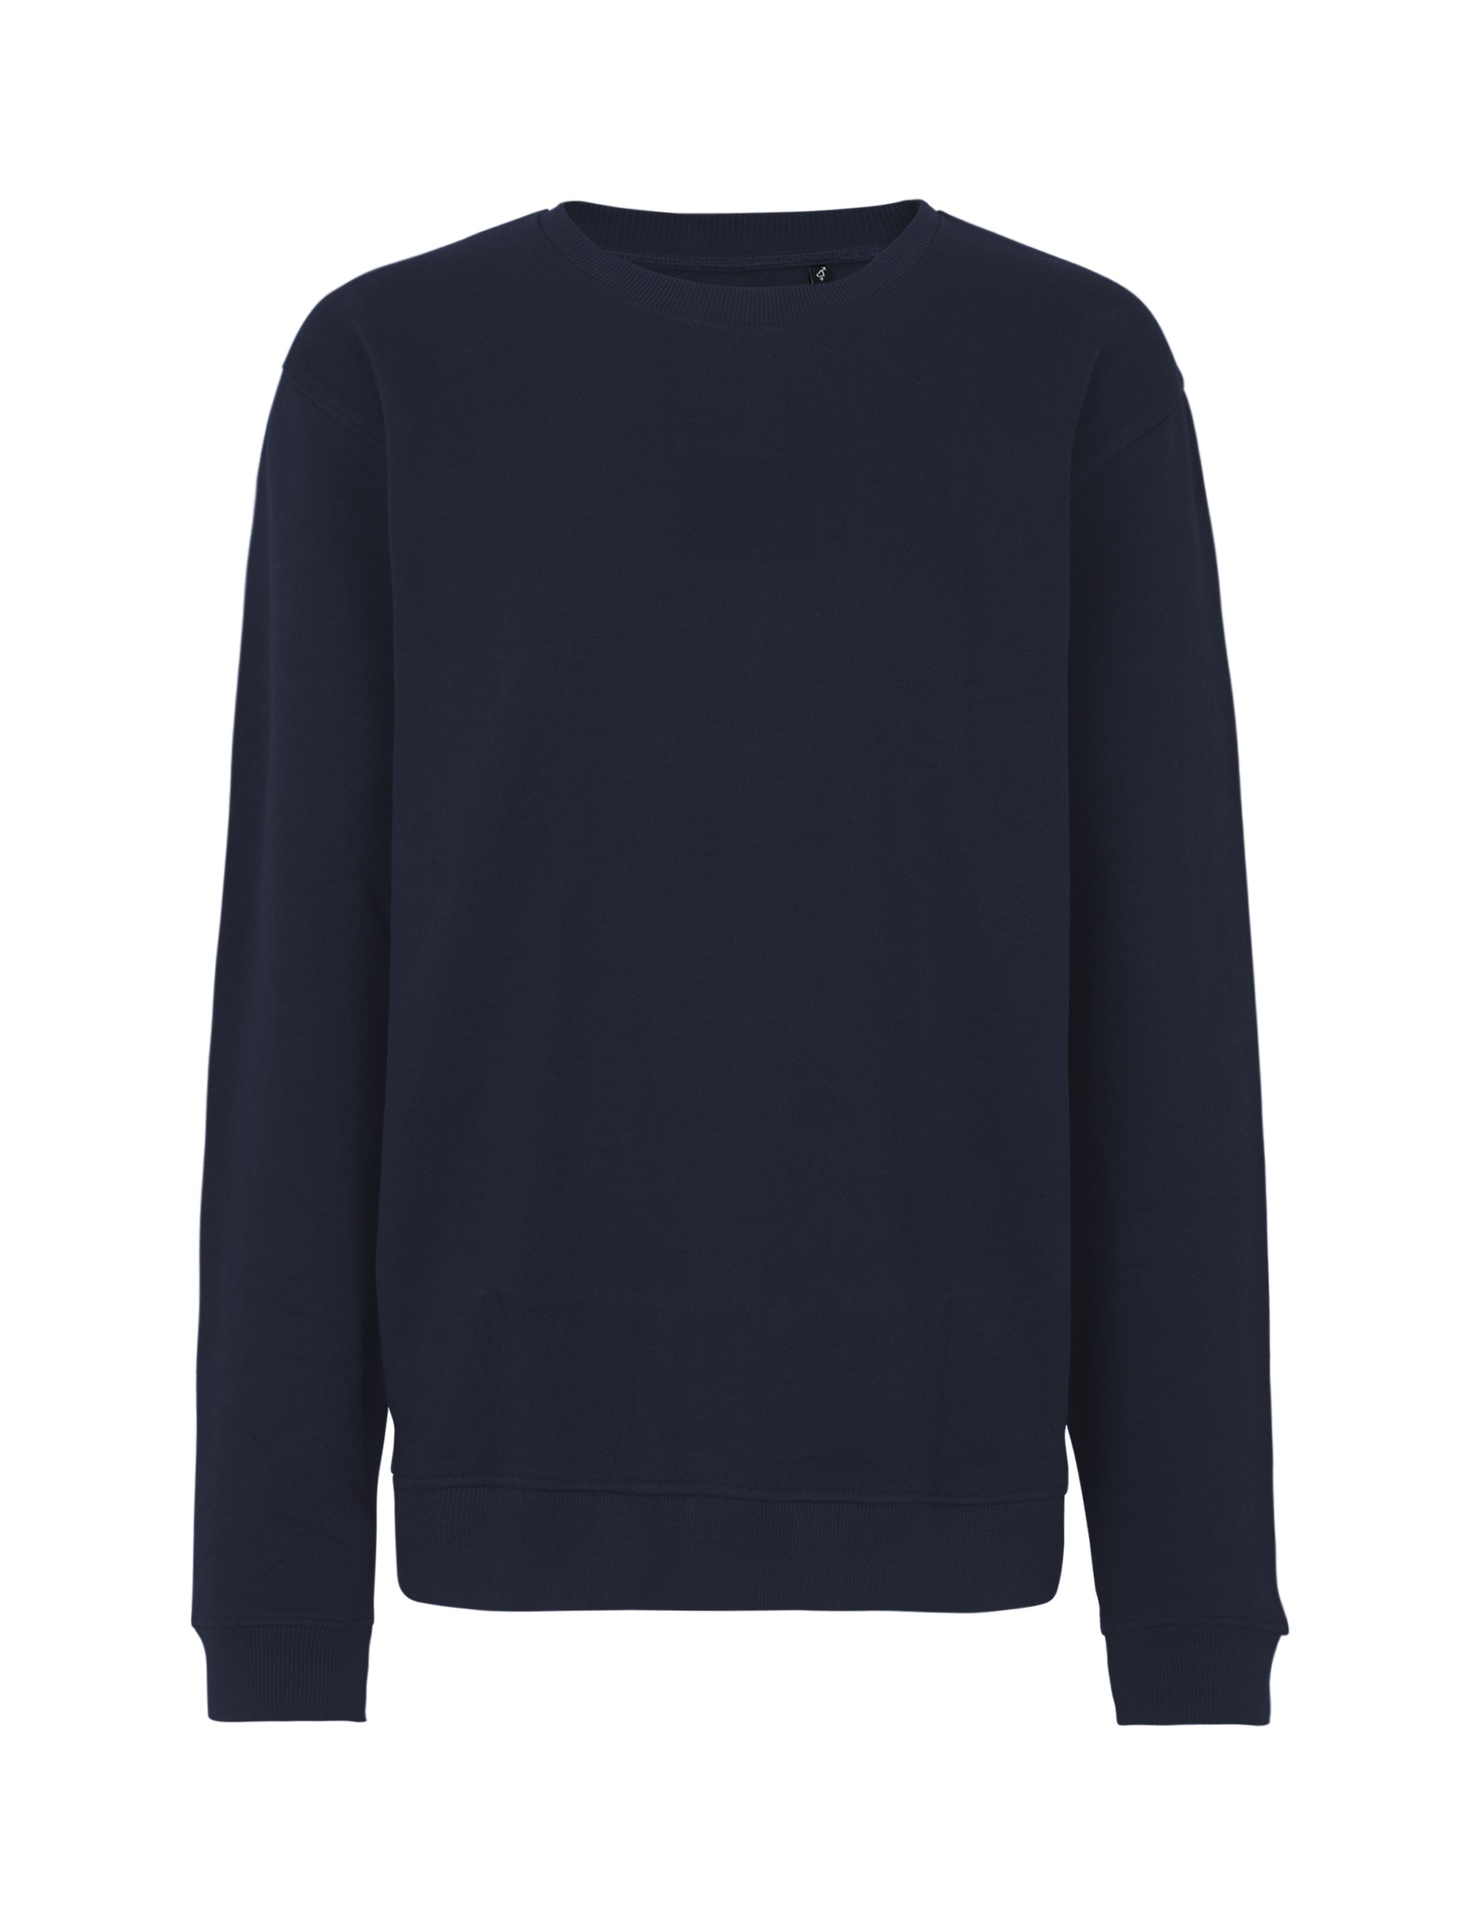 [PR/03531] Unisex Workwear Sweatshirt (Navy 04, S)